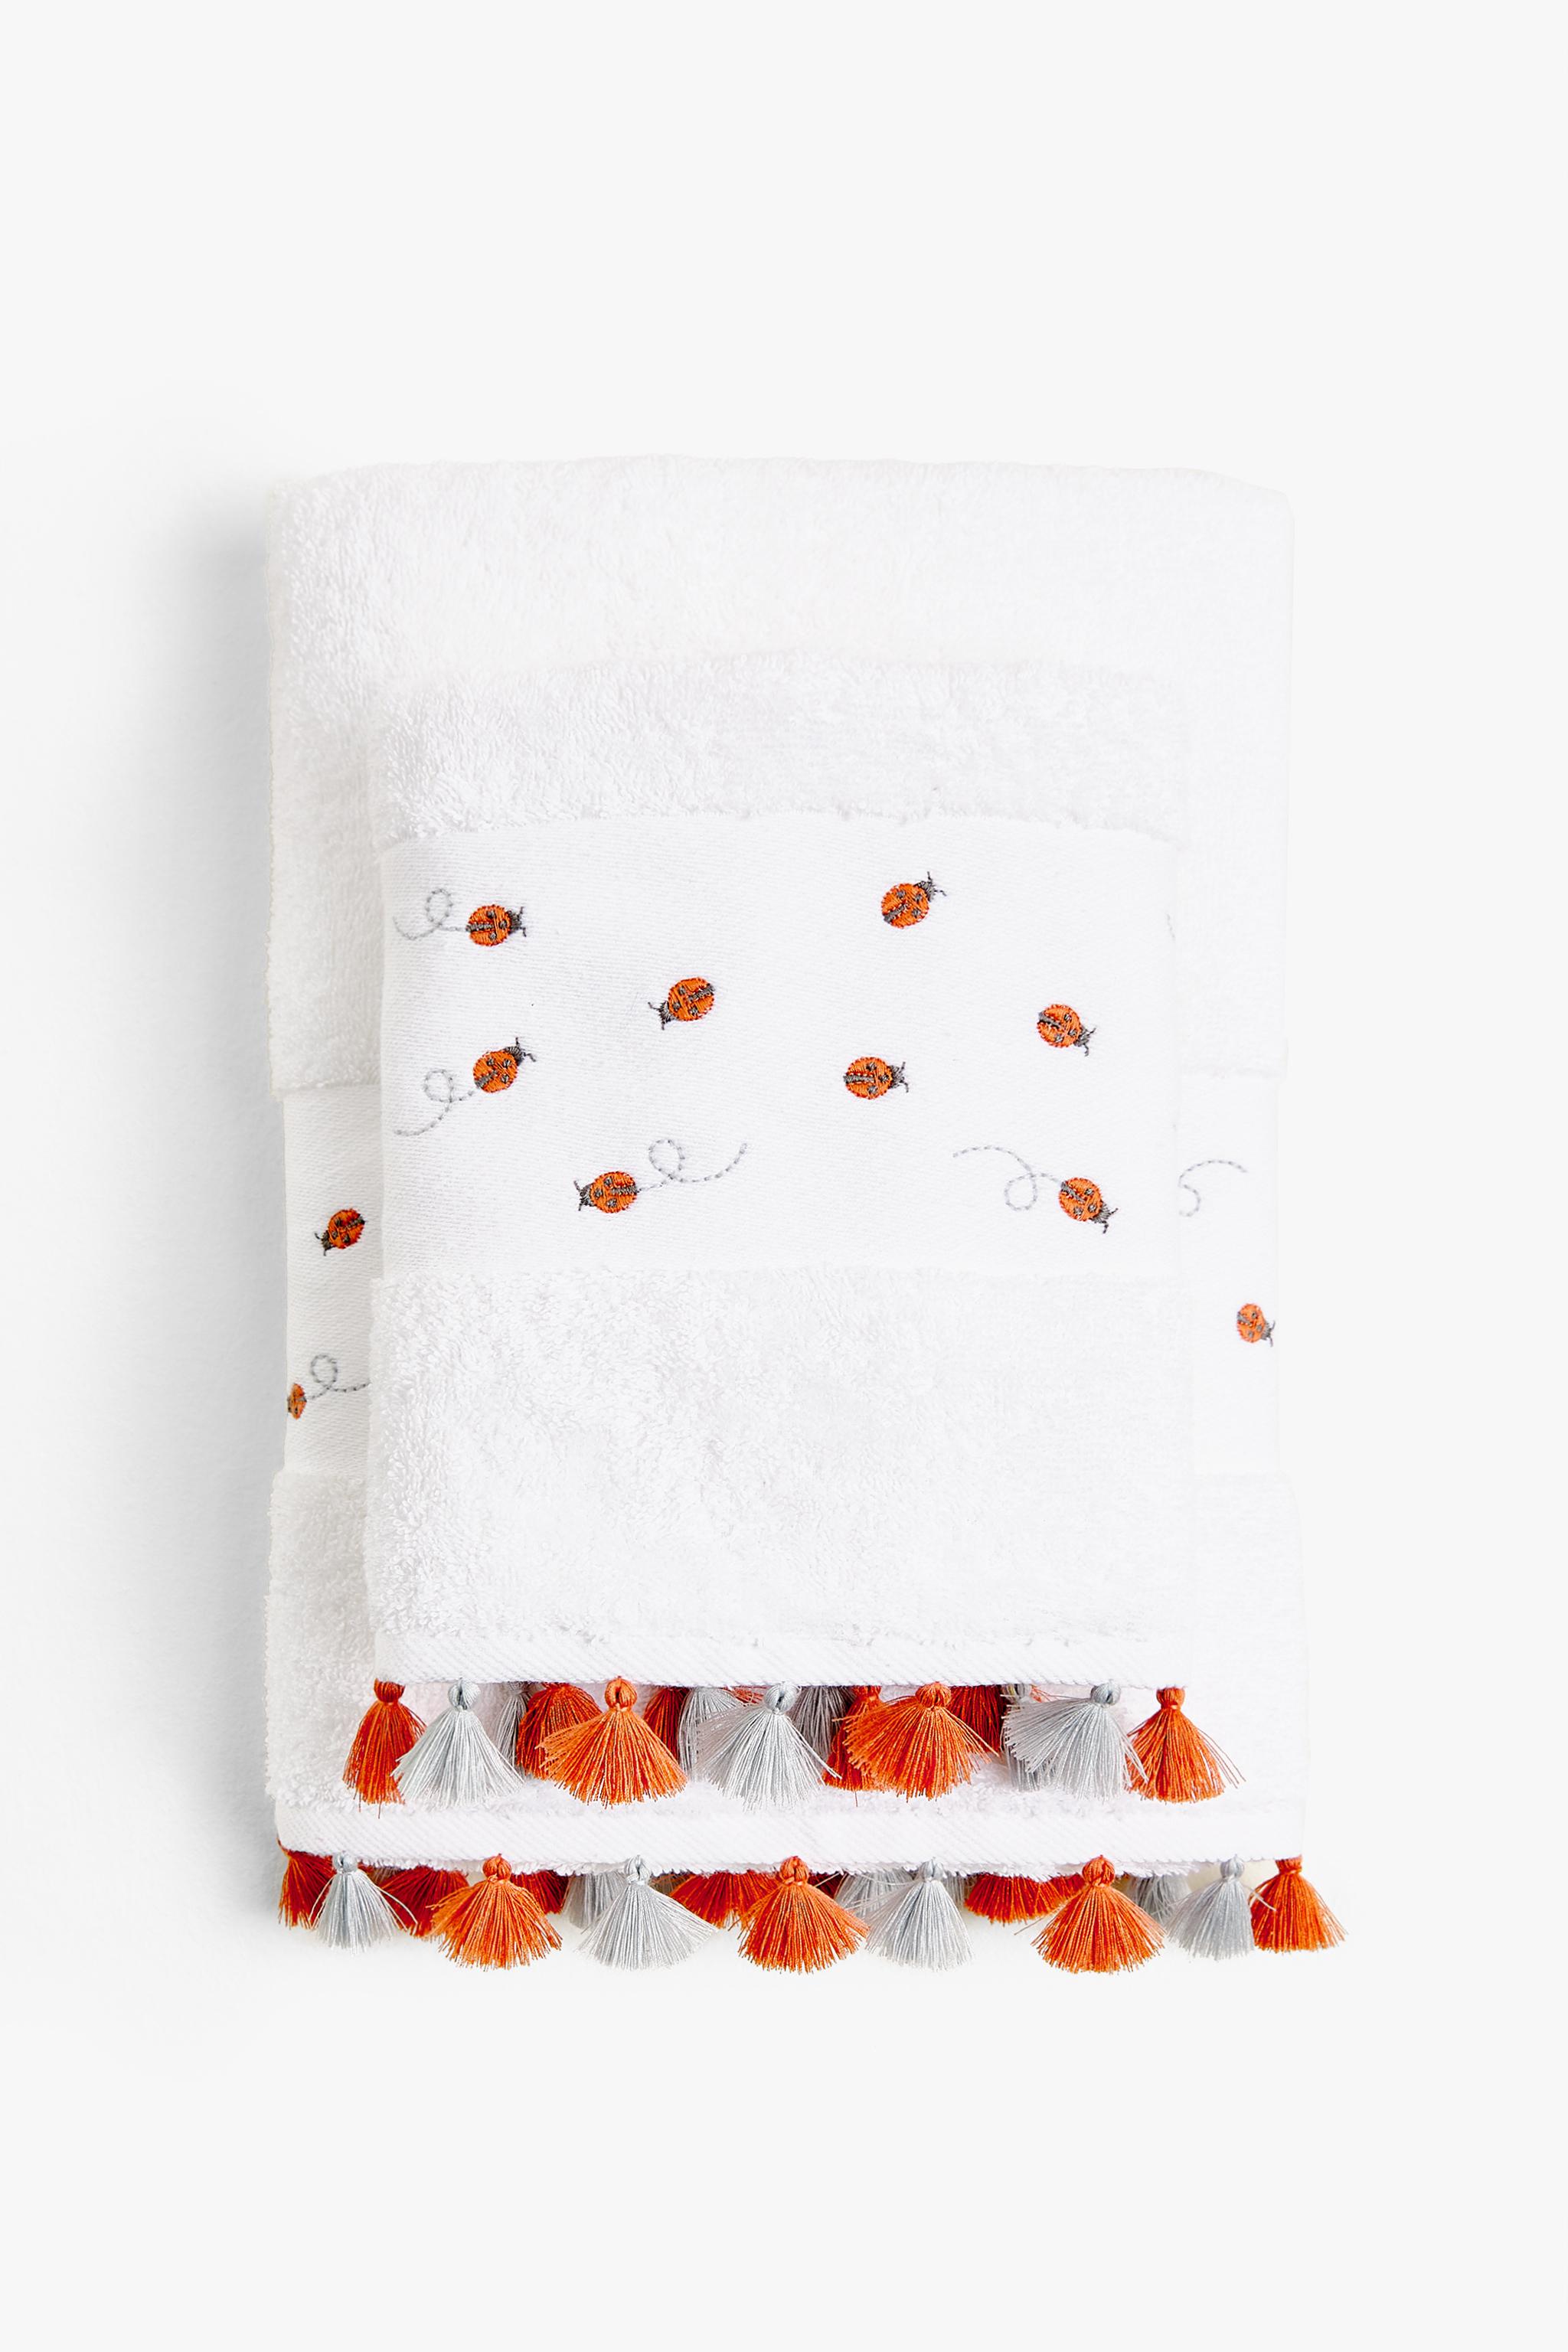 Marrone kexinda Asciugamano di Cotone casa Cucina Bagno igienici Viso Mani di Lavaggio della cialda Design Asciugamano 72x32cm 